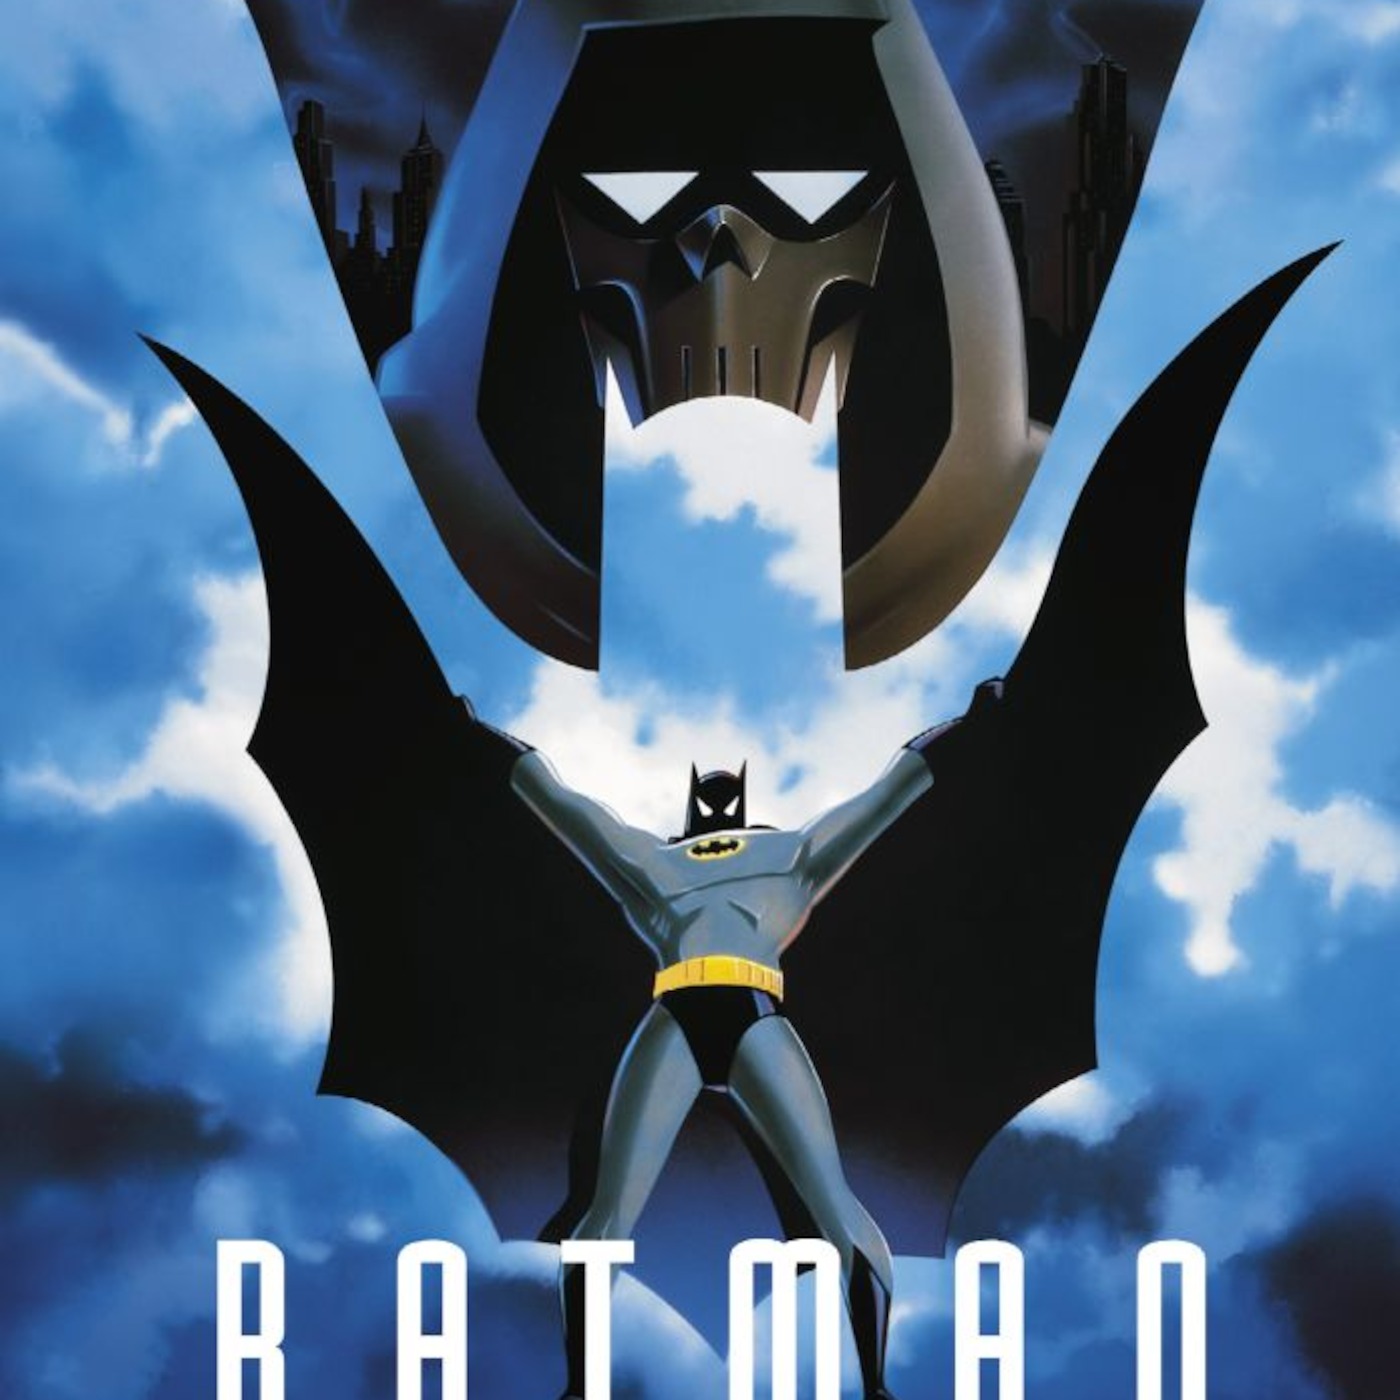 Gotham goes Hollywood episode 18: BATMAN: MASK OF THE PHANTASM (1993)